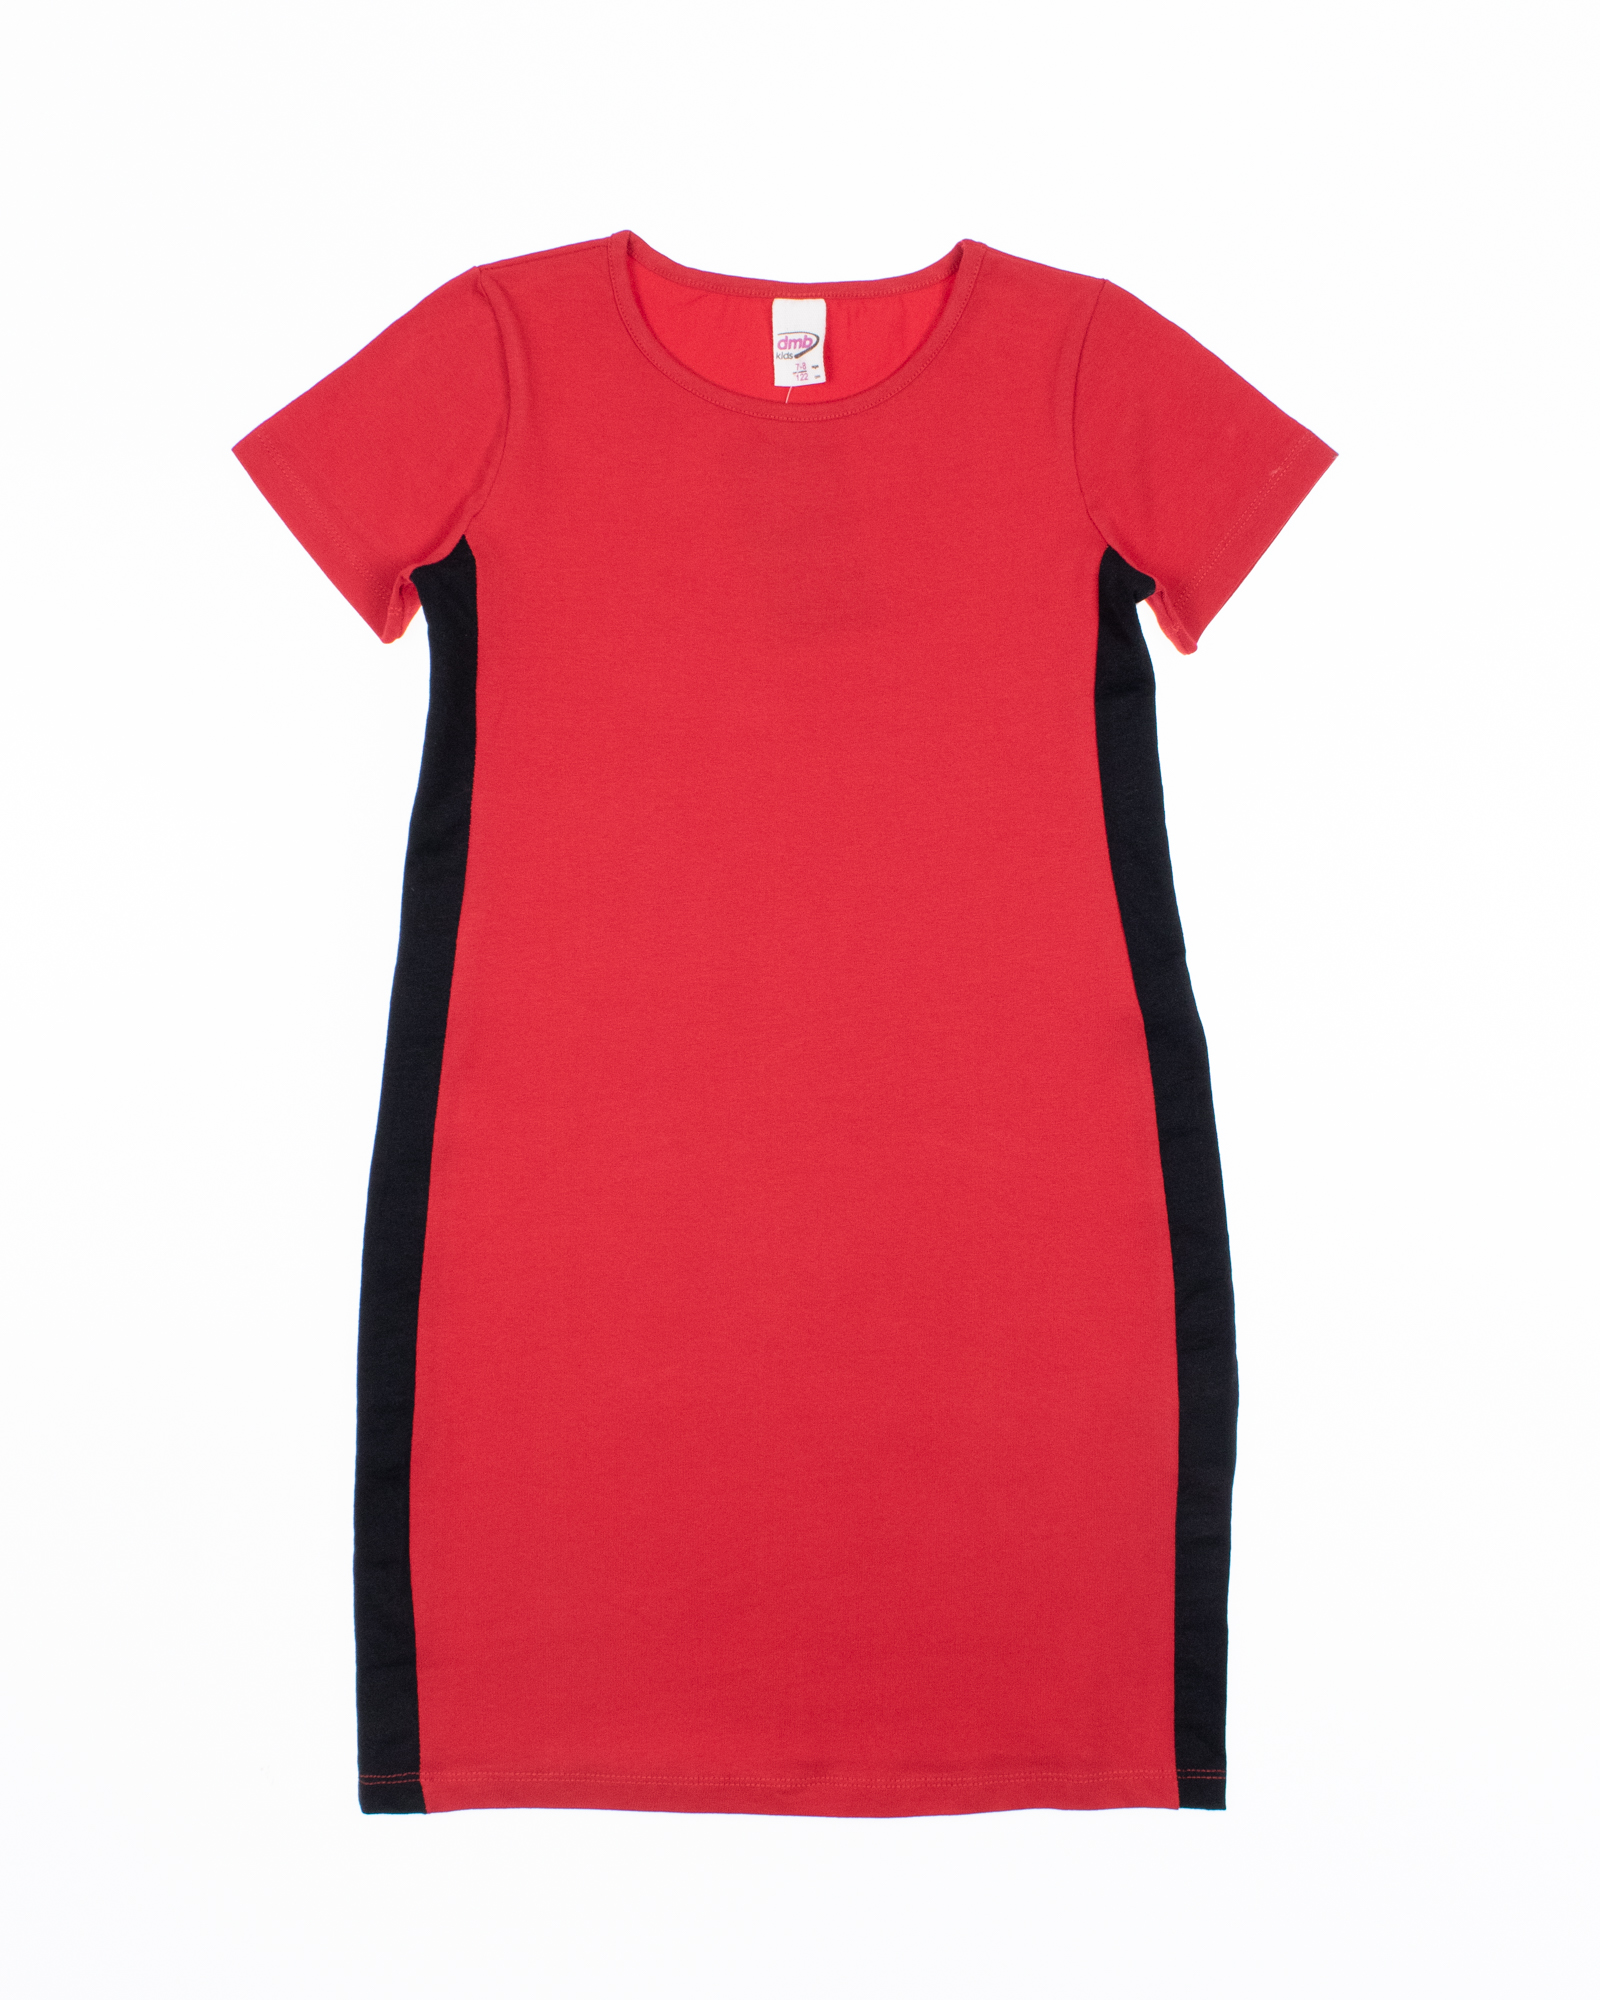 DMB KIDS 2076 Платье  (цвет: Красный)